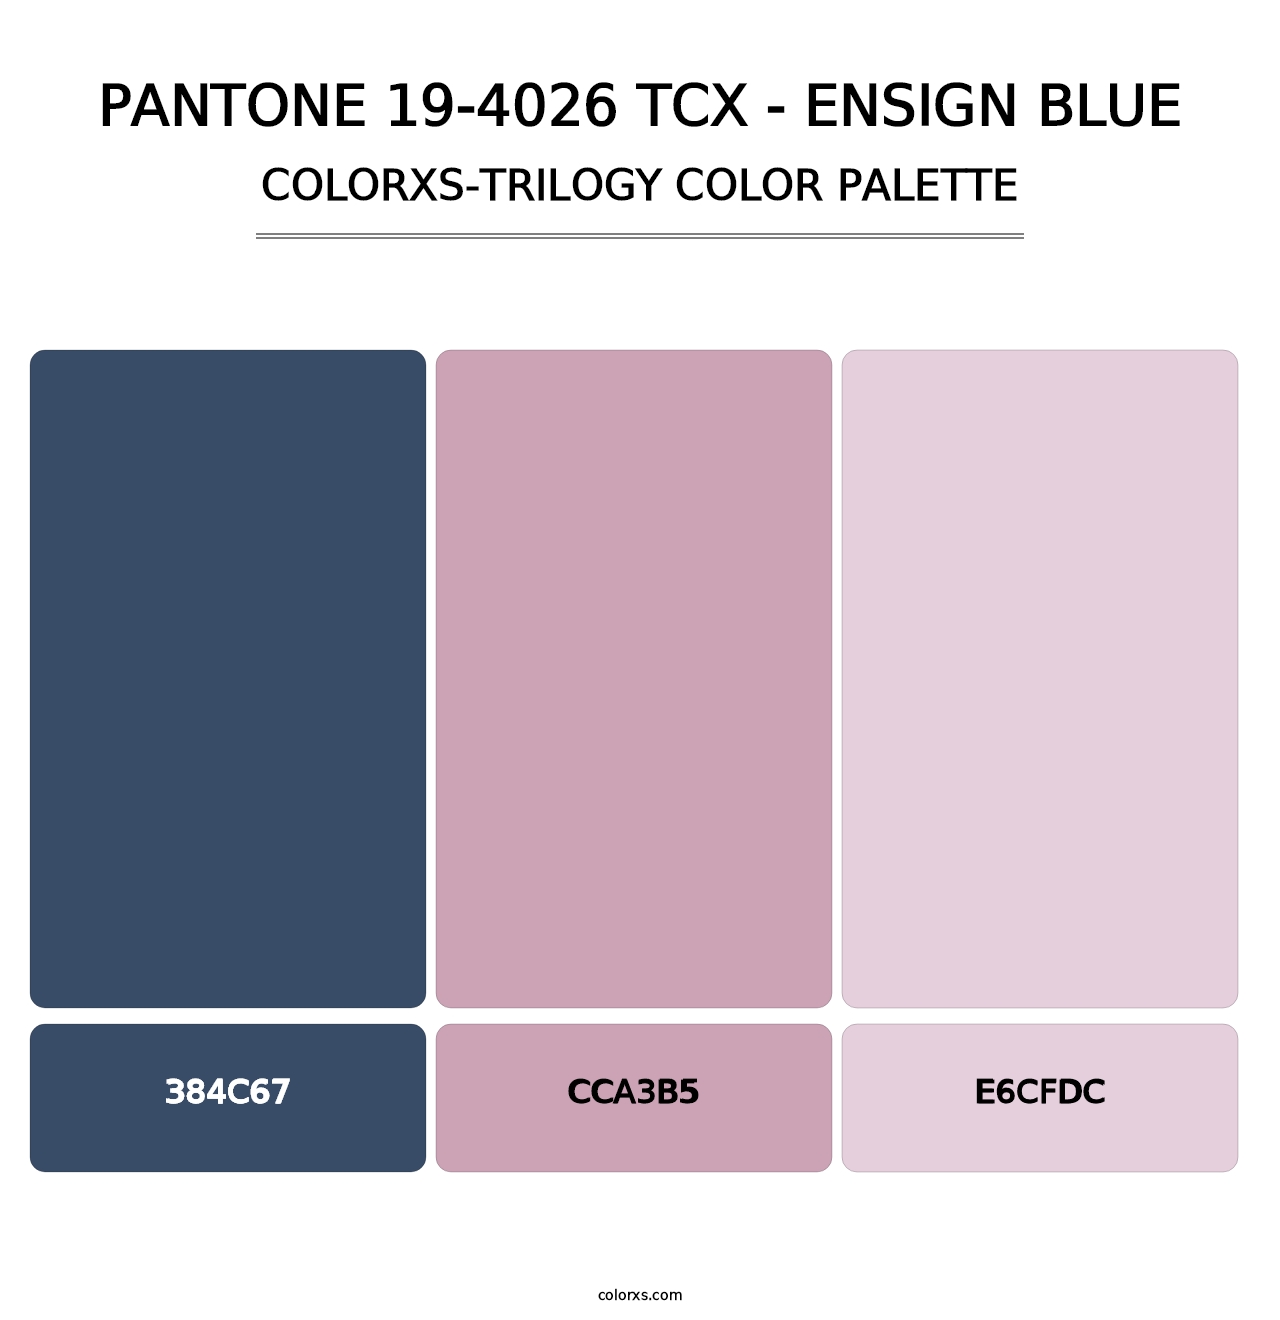 PANTONE 19-4026 TCX - Ensign Blue - Colorxs Trilogy Palette